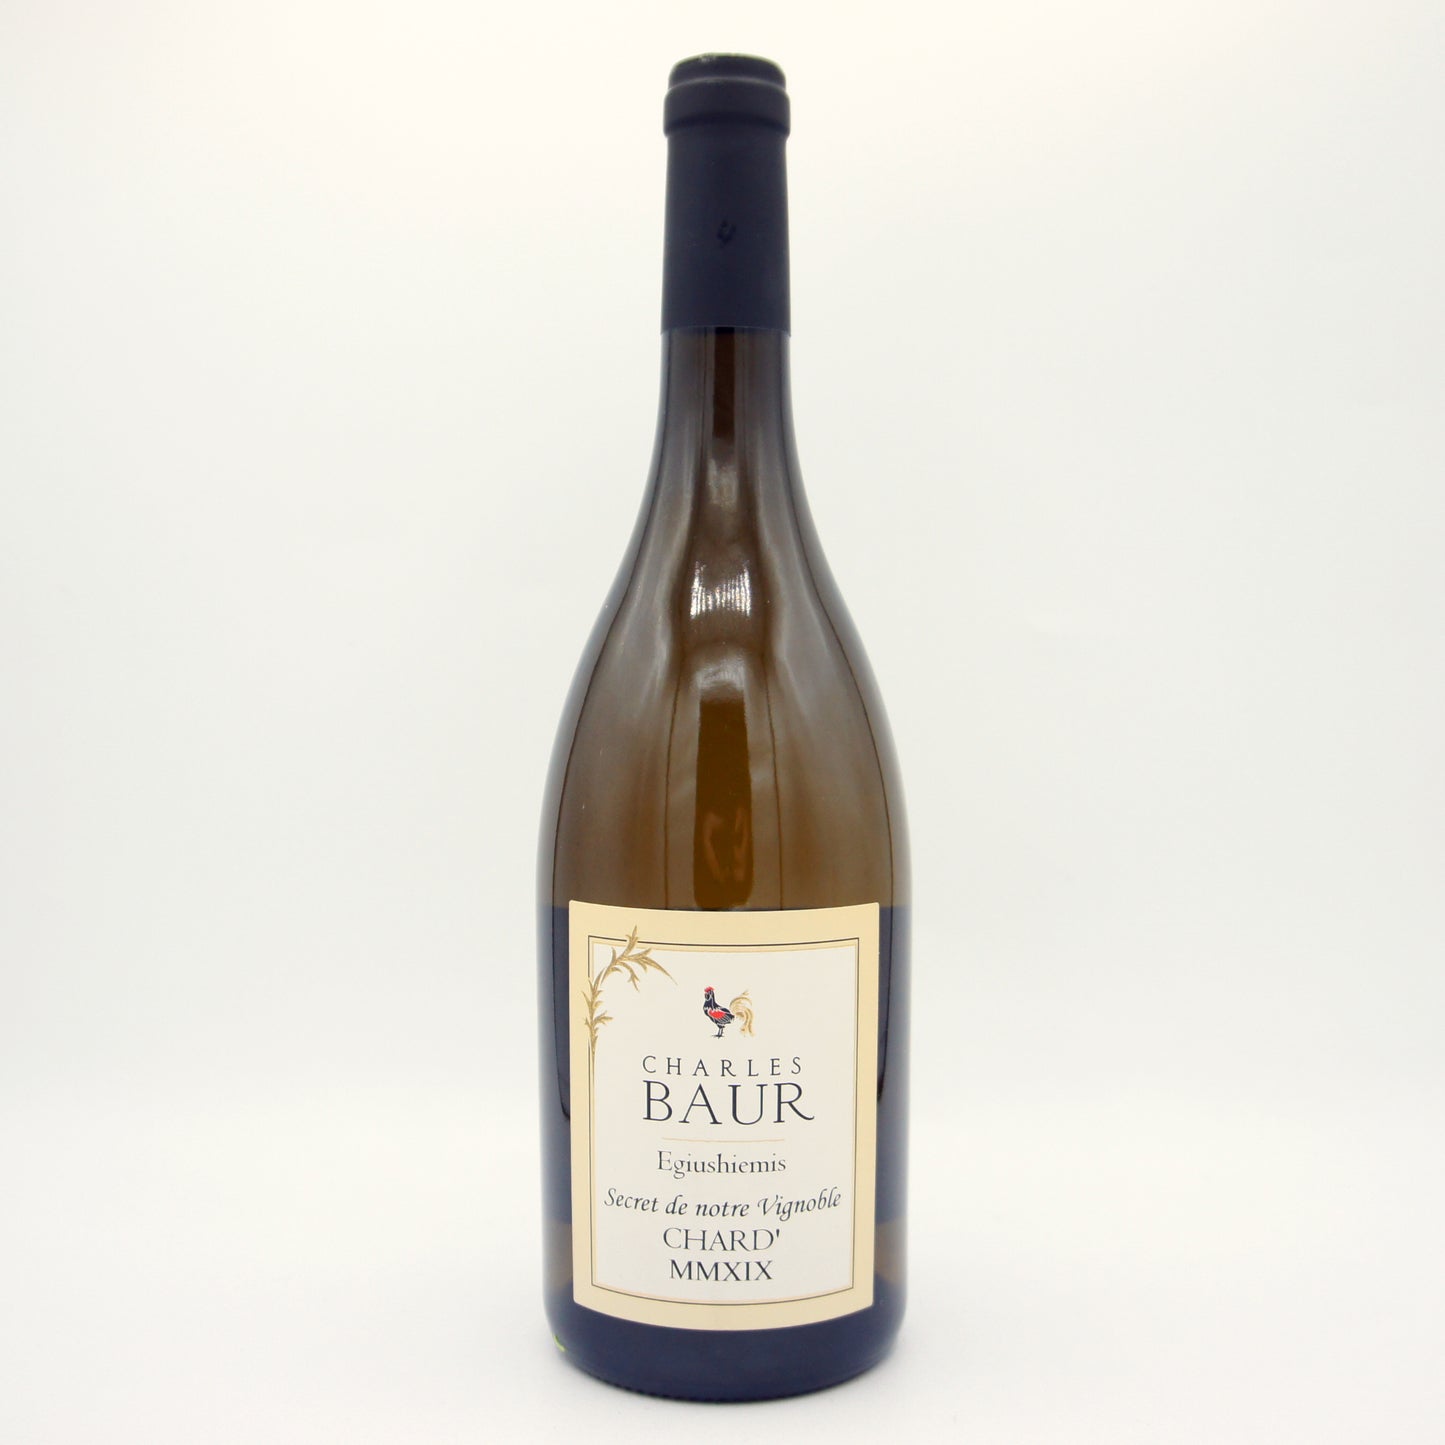 Baur Chardonnay Eguisheim MMXIX